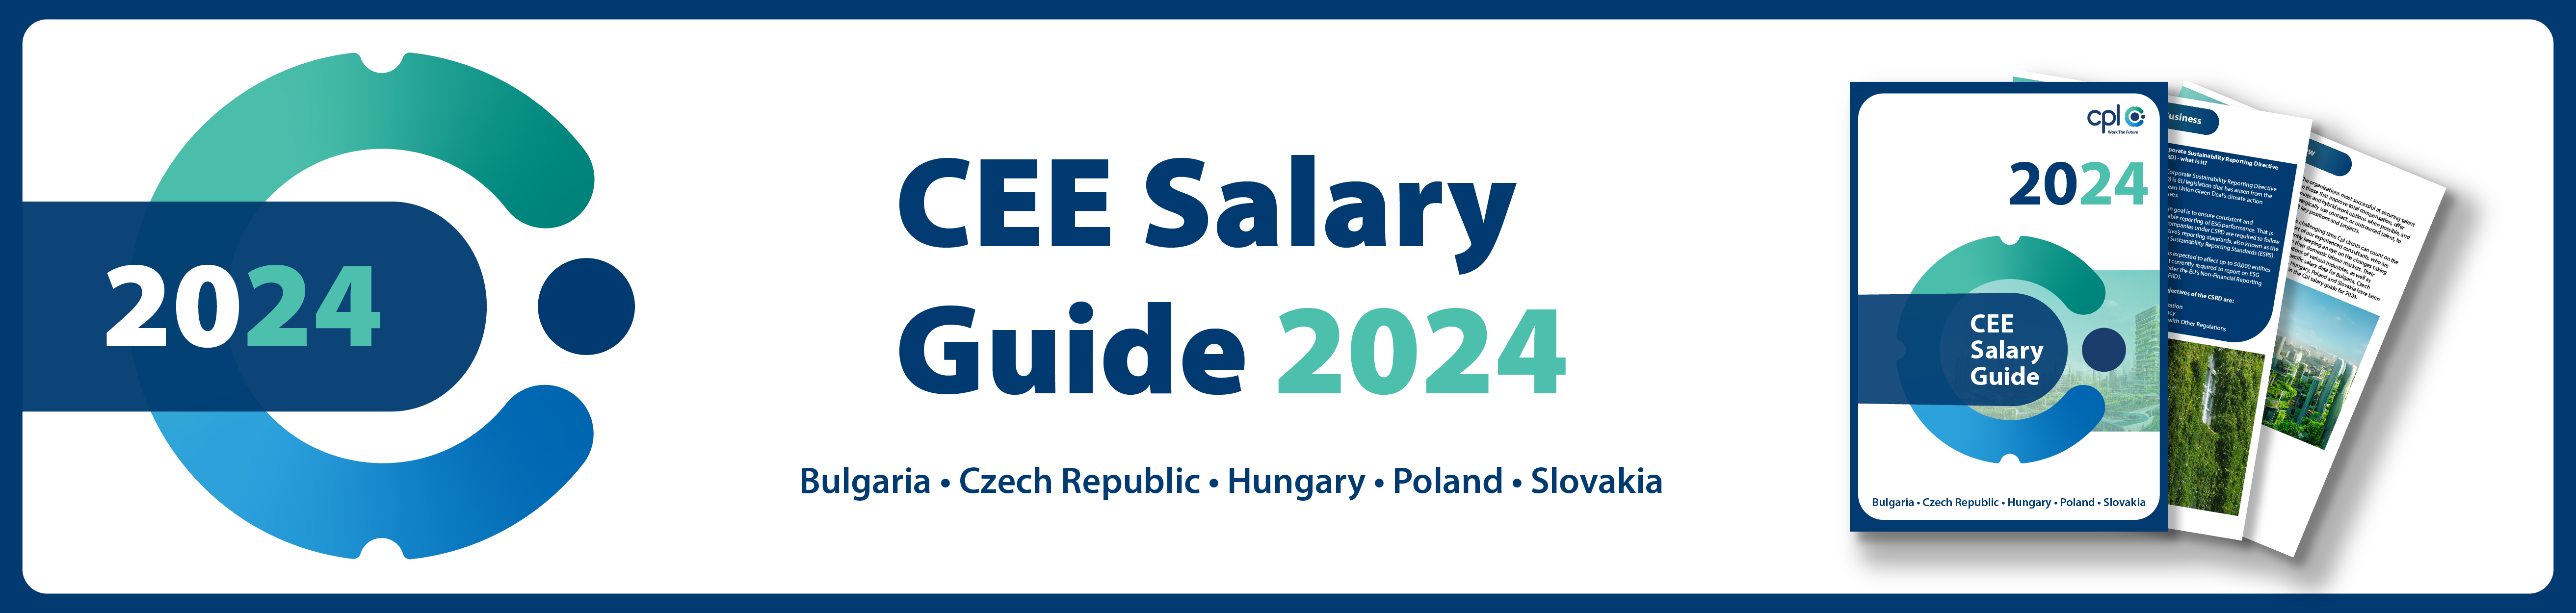 CEE Salary Guide 2024 - platový průvodce